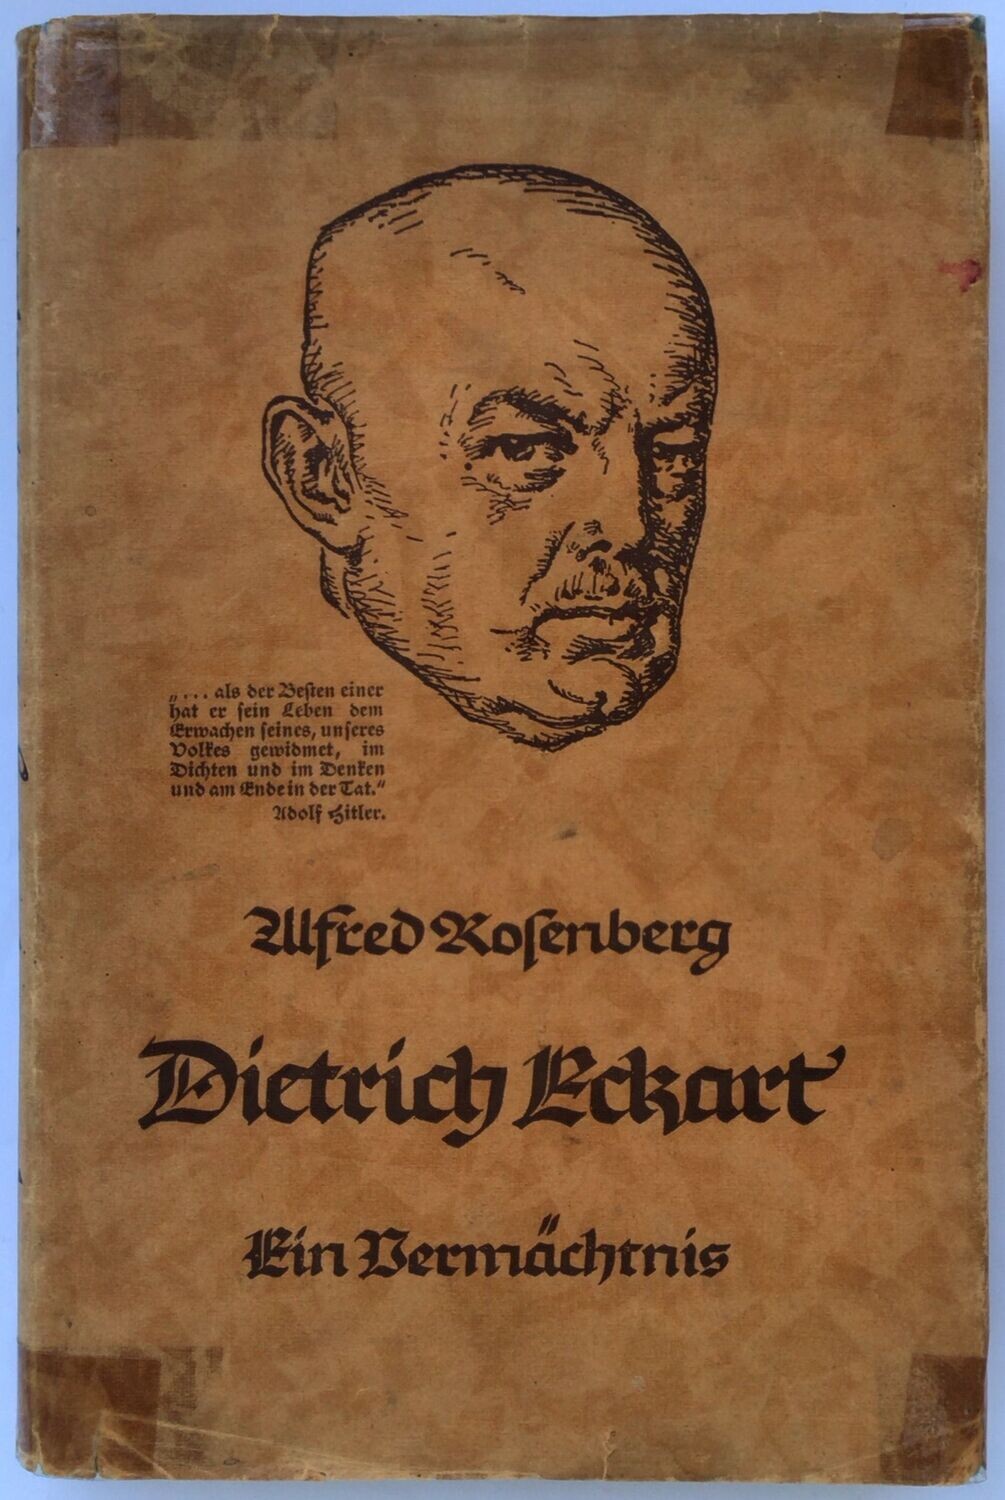 Dietrich Eckart - Ein Vermächtnis - Halbleinenausgabe (7. Auflage) aus dem Jahr 1942 mit Original-Schutzumschlag